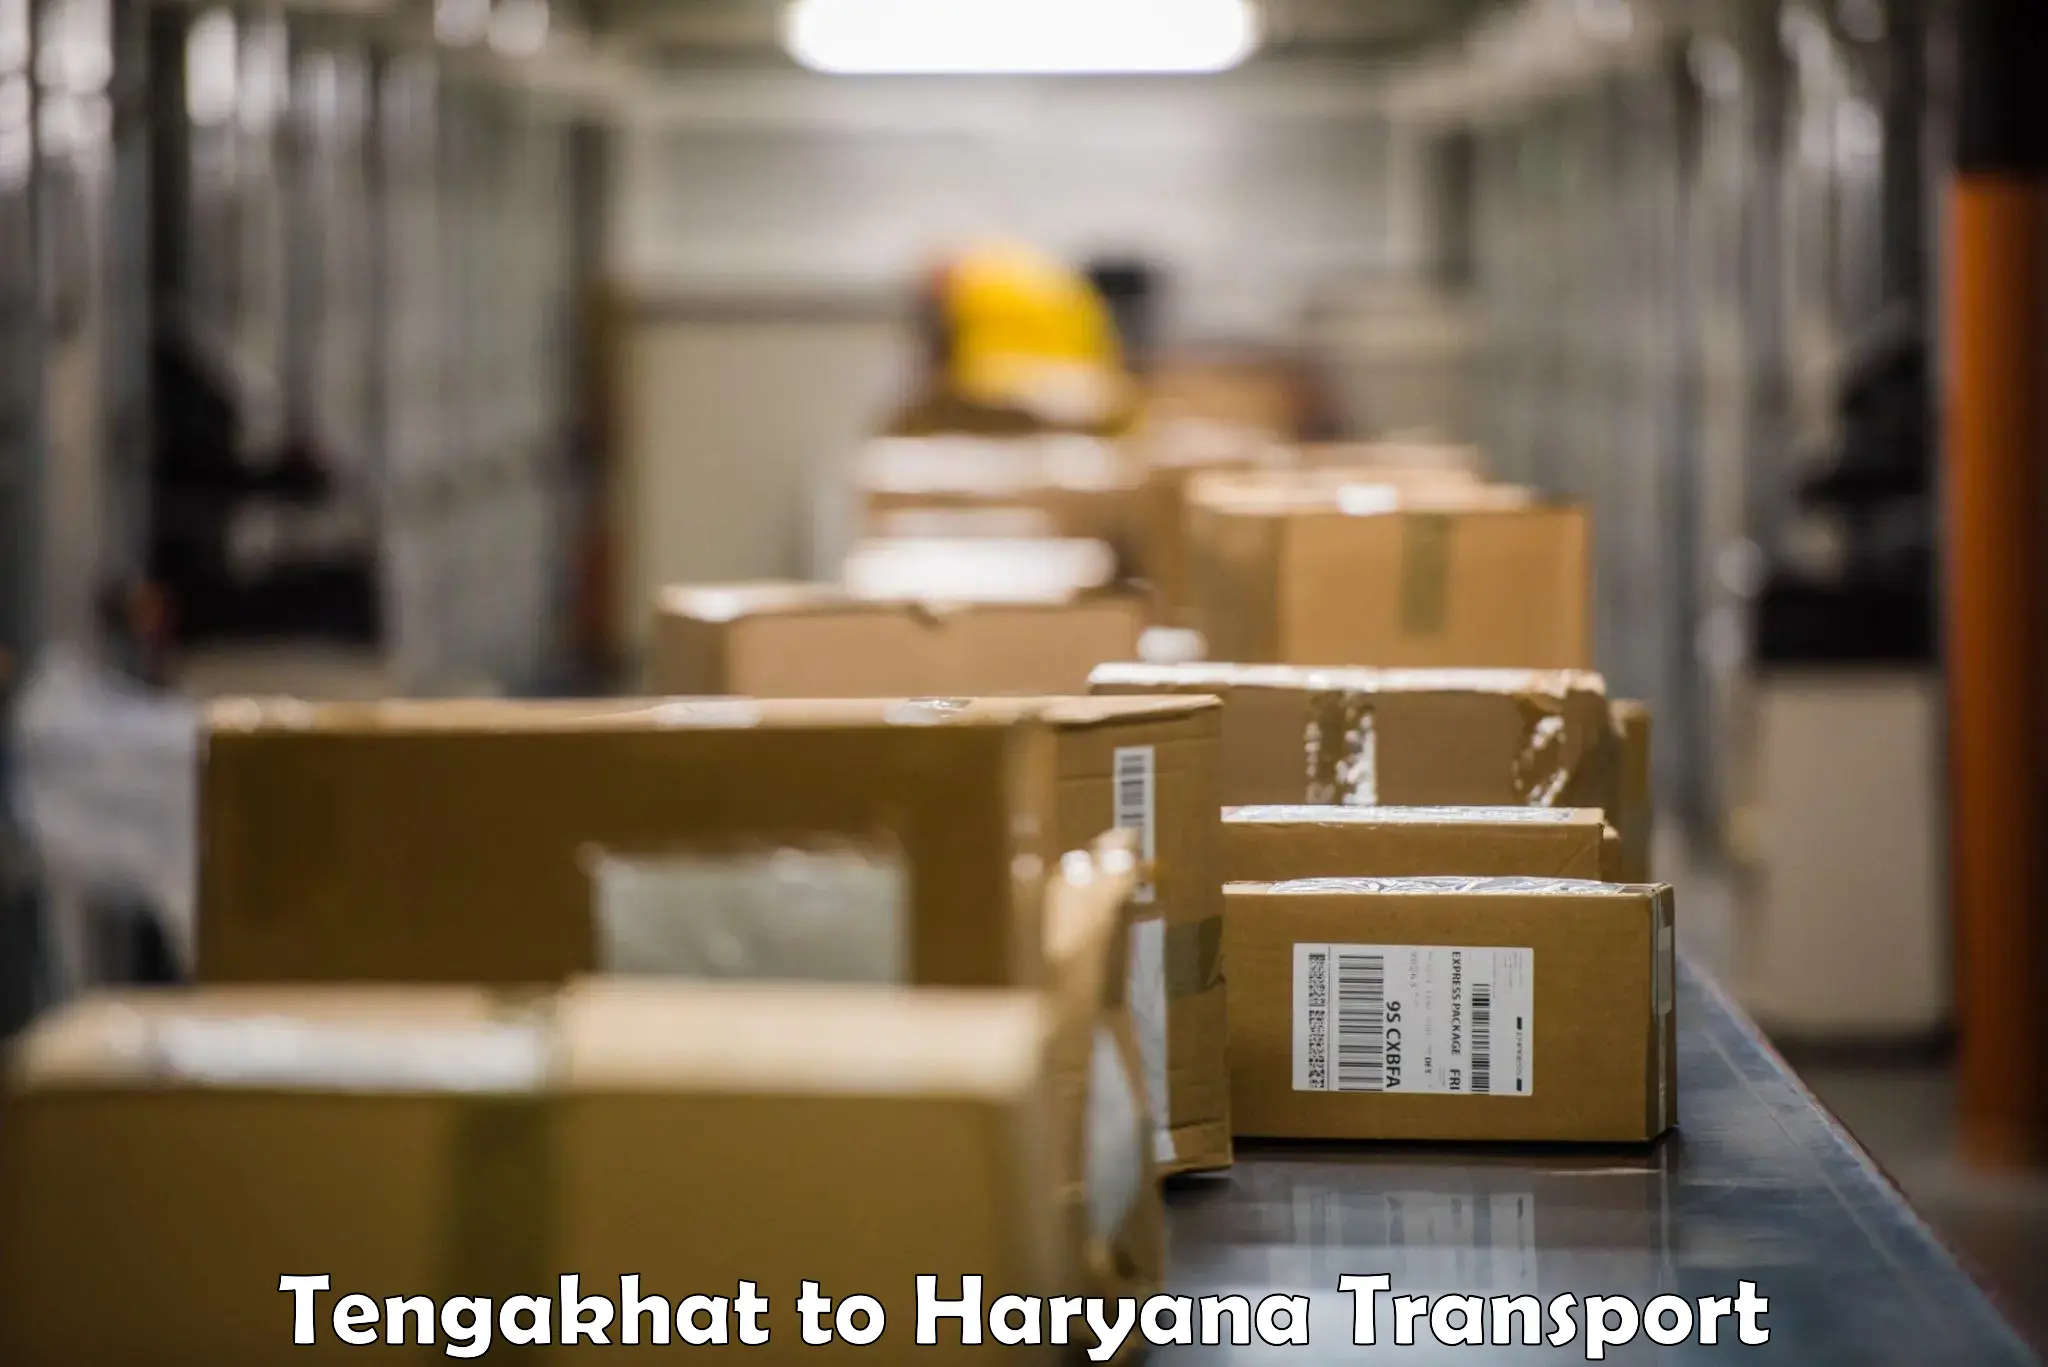 Furniture transport service Tengakhat to Rewari